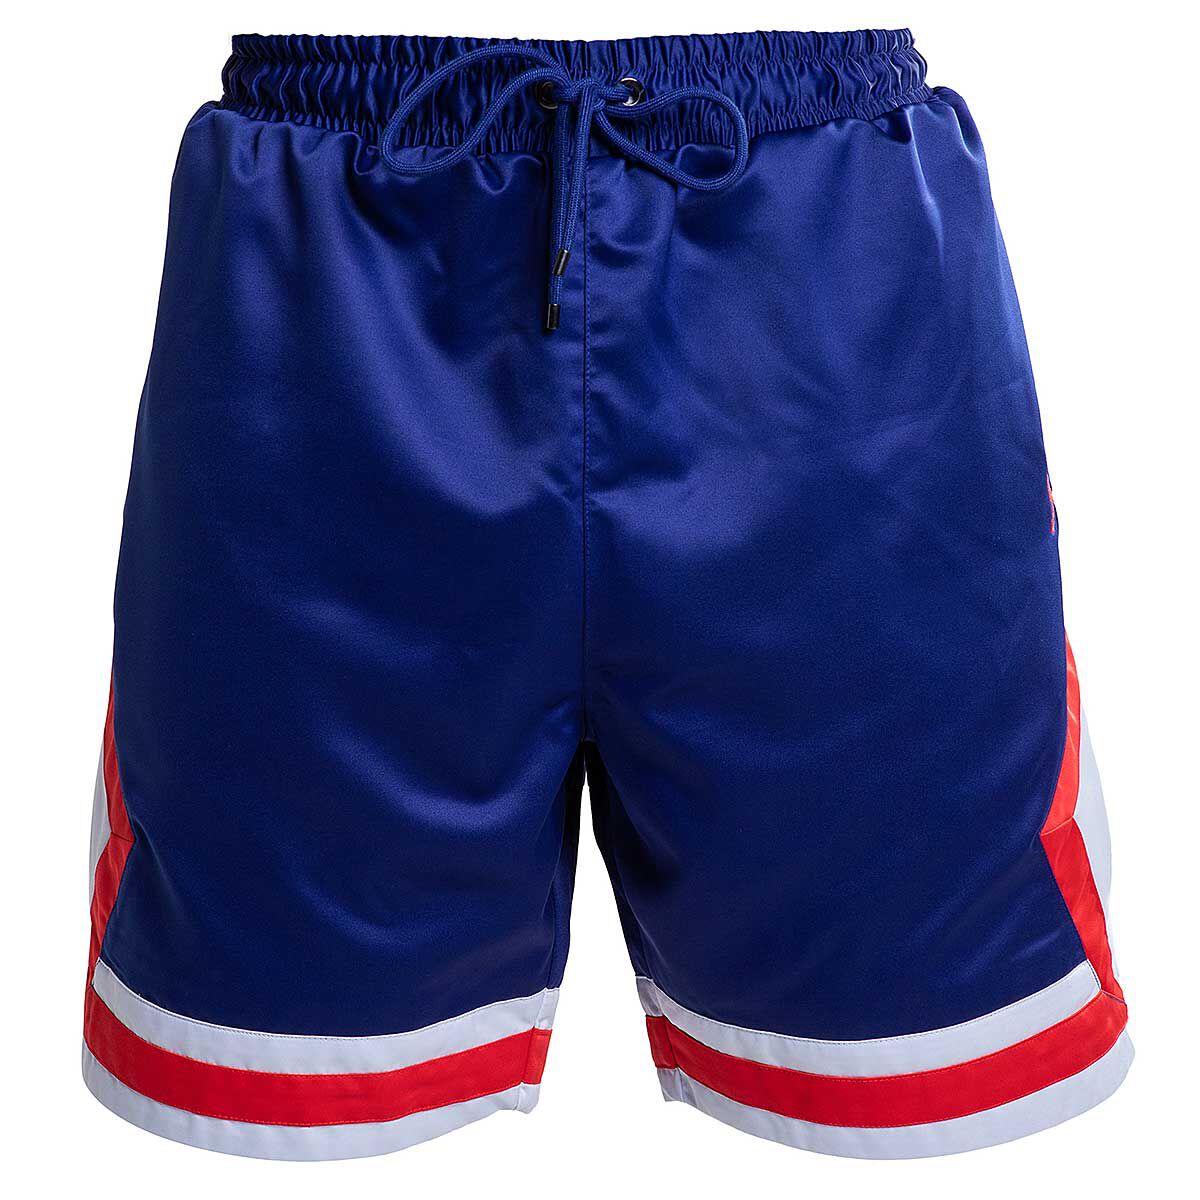 half red half blue jordan shorts